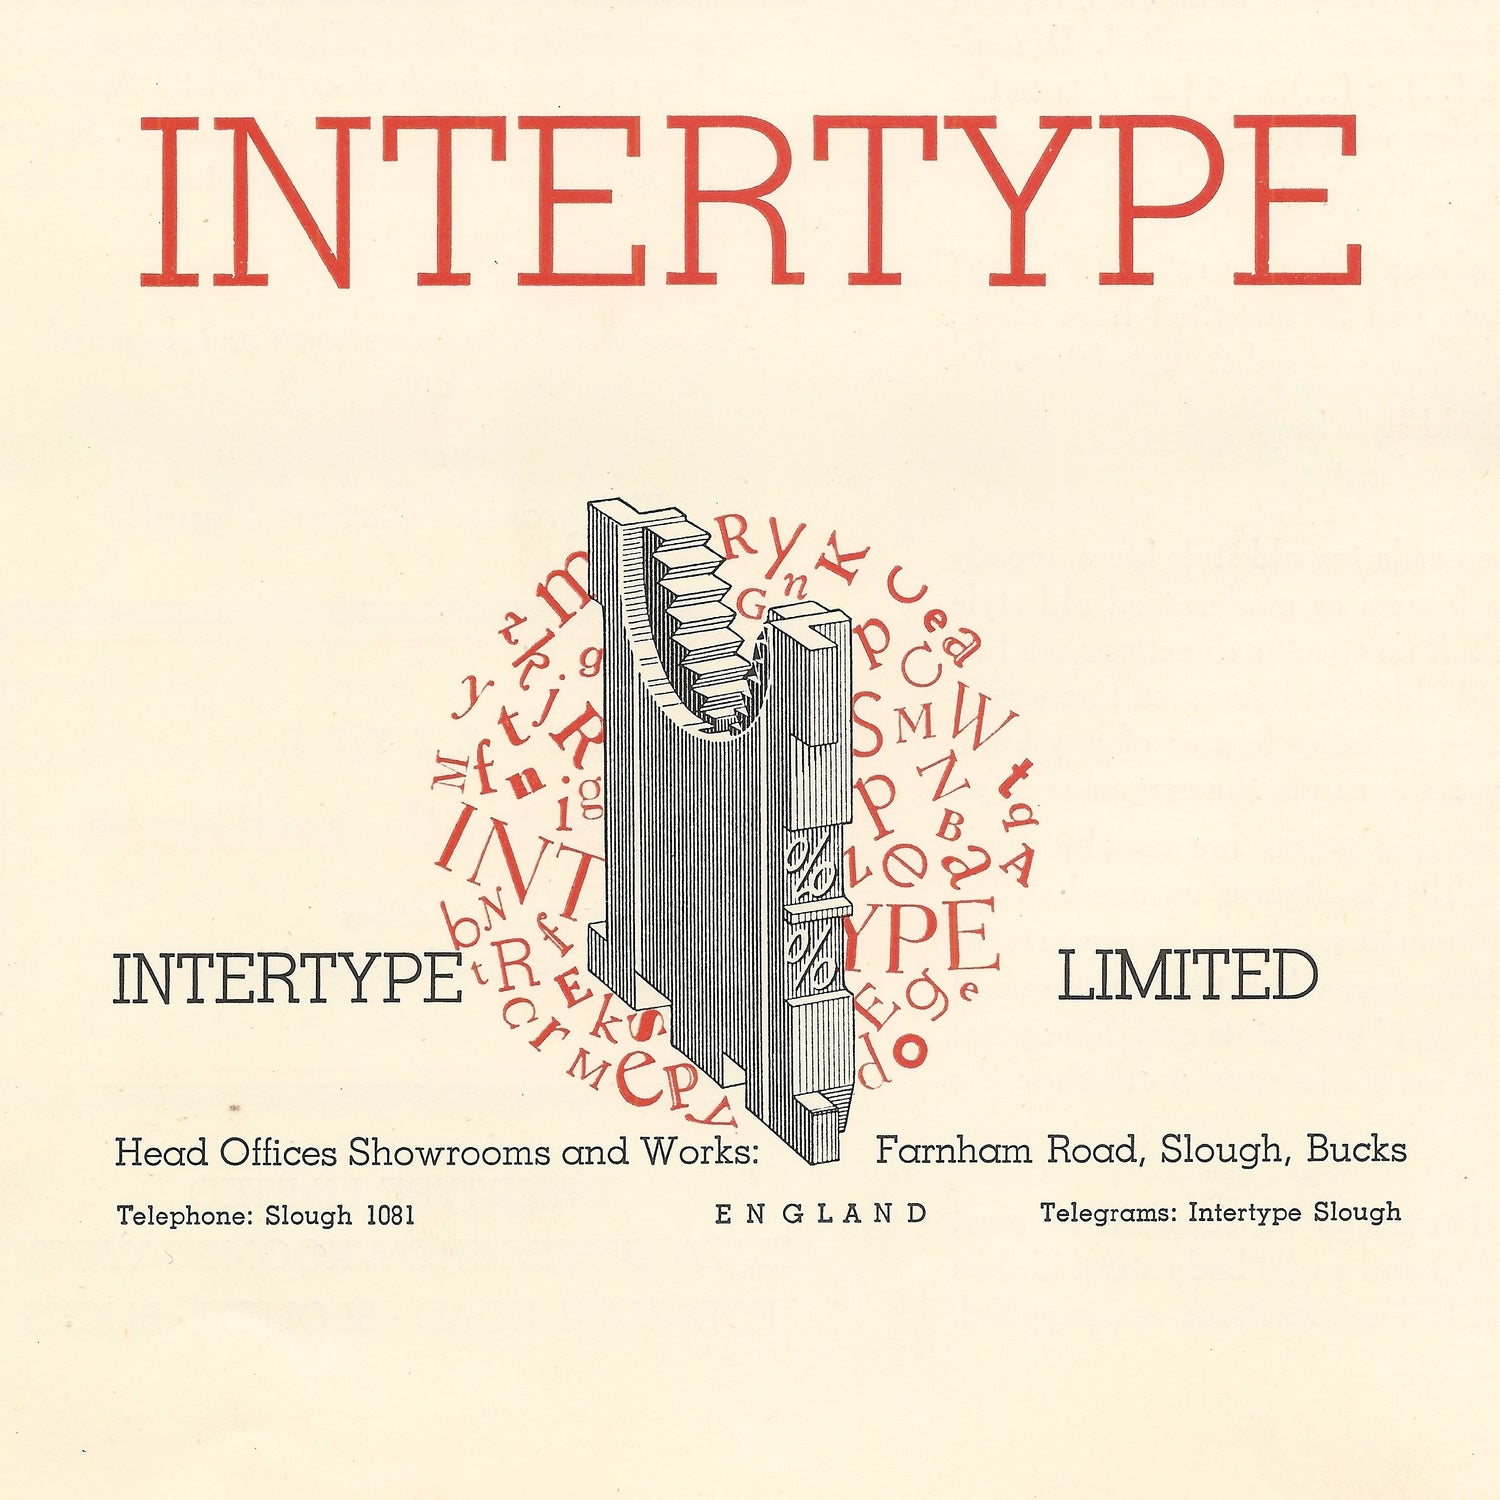 Intertype